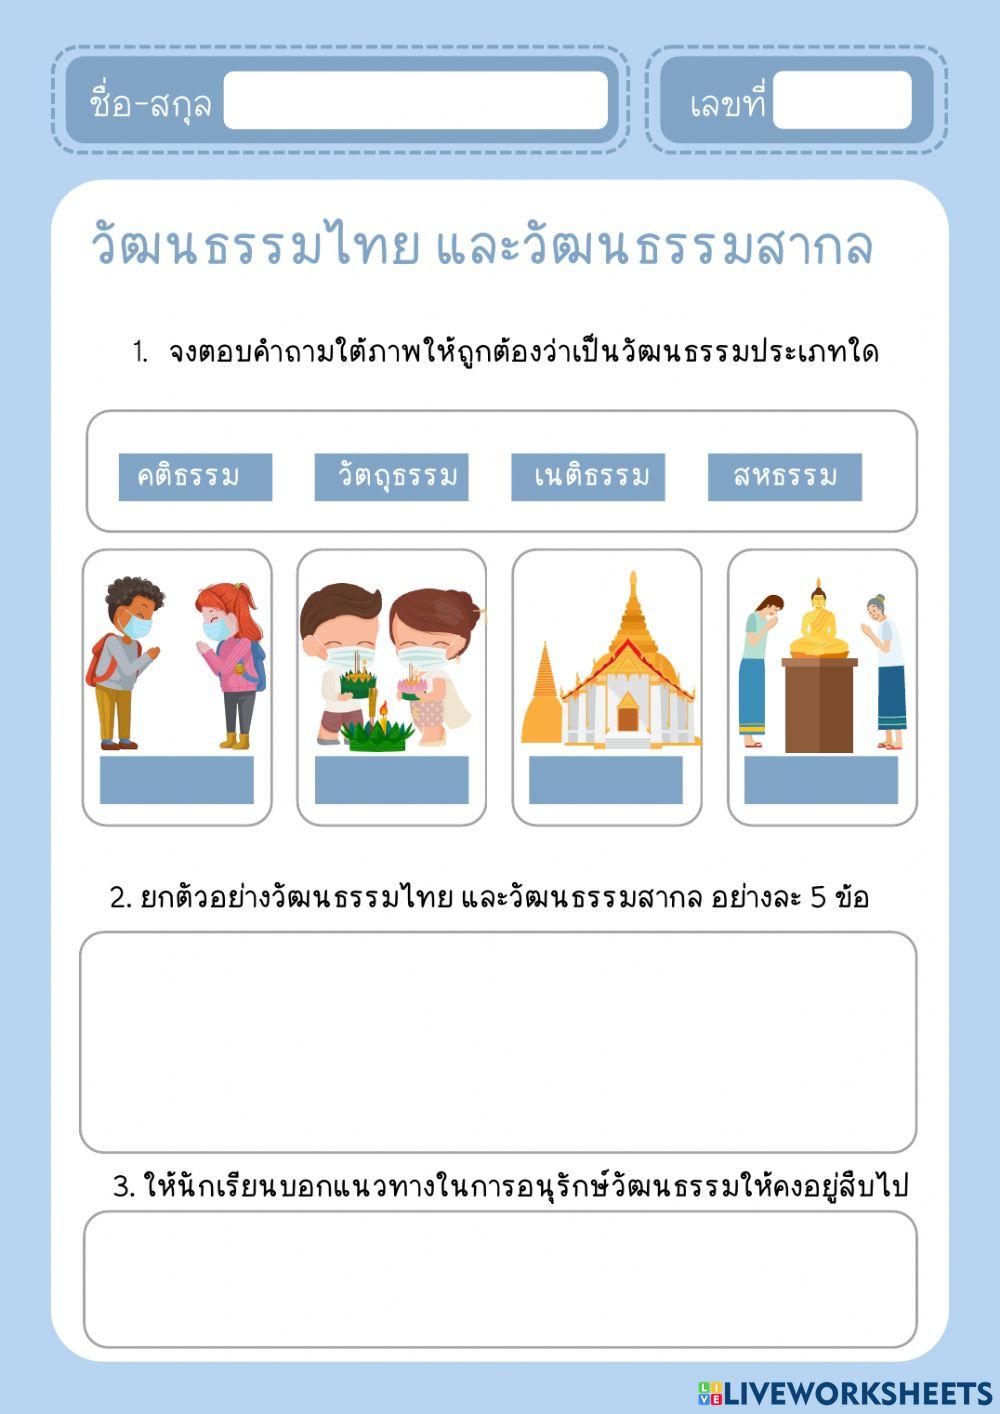 วัฒนธรรมไทย และวัฒนธรรมสากล